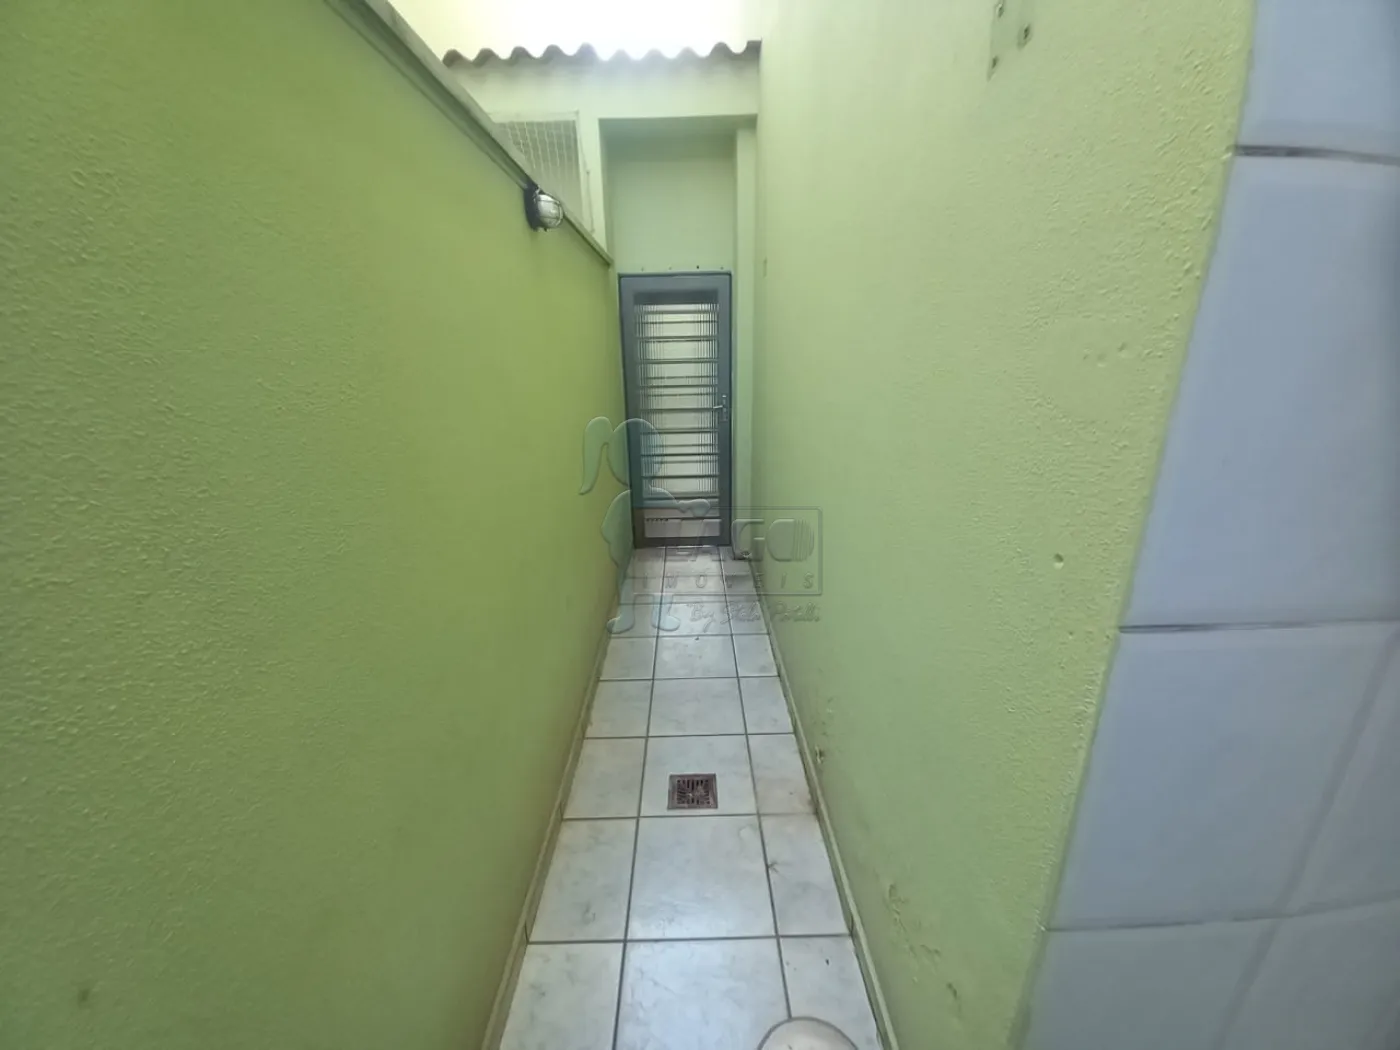 Alugar Apartamentos / Duplex em Ribeirão Preto R$ 750,00 - Foto 7